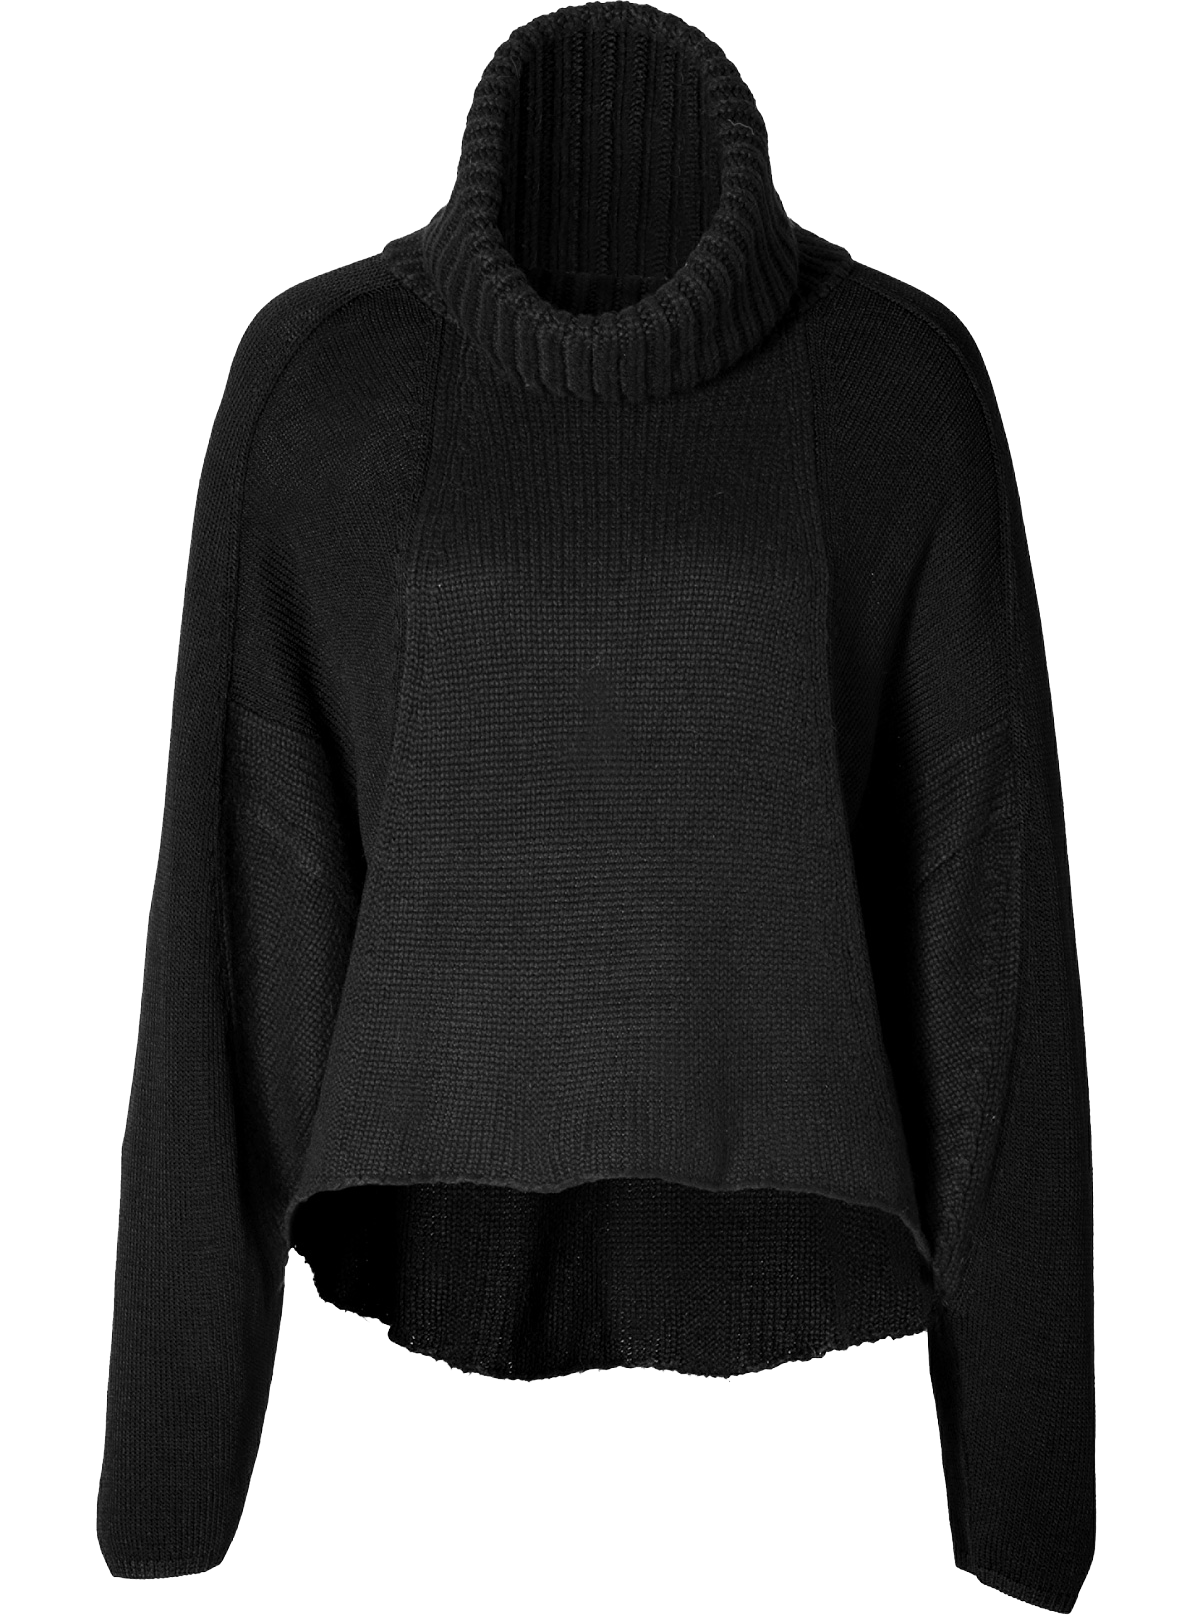 Helmut Lang black turtleneck pullover sweater